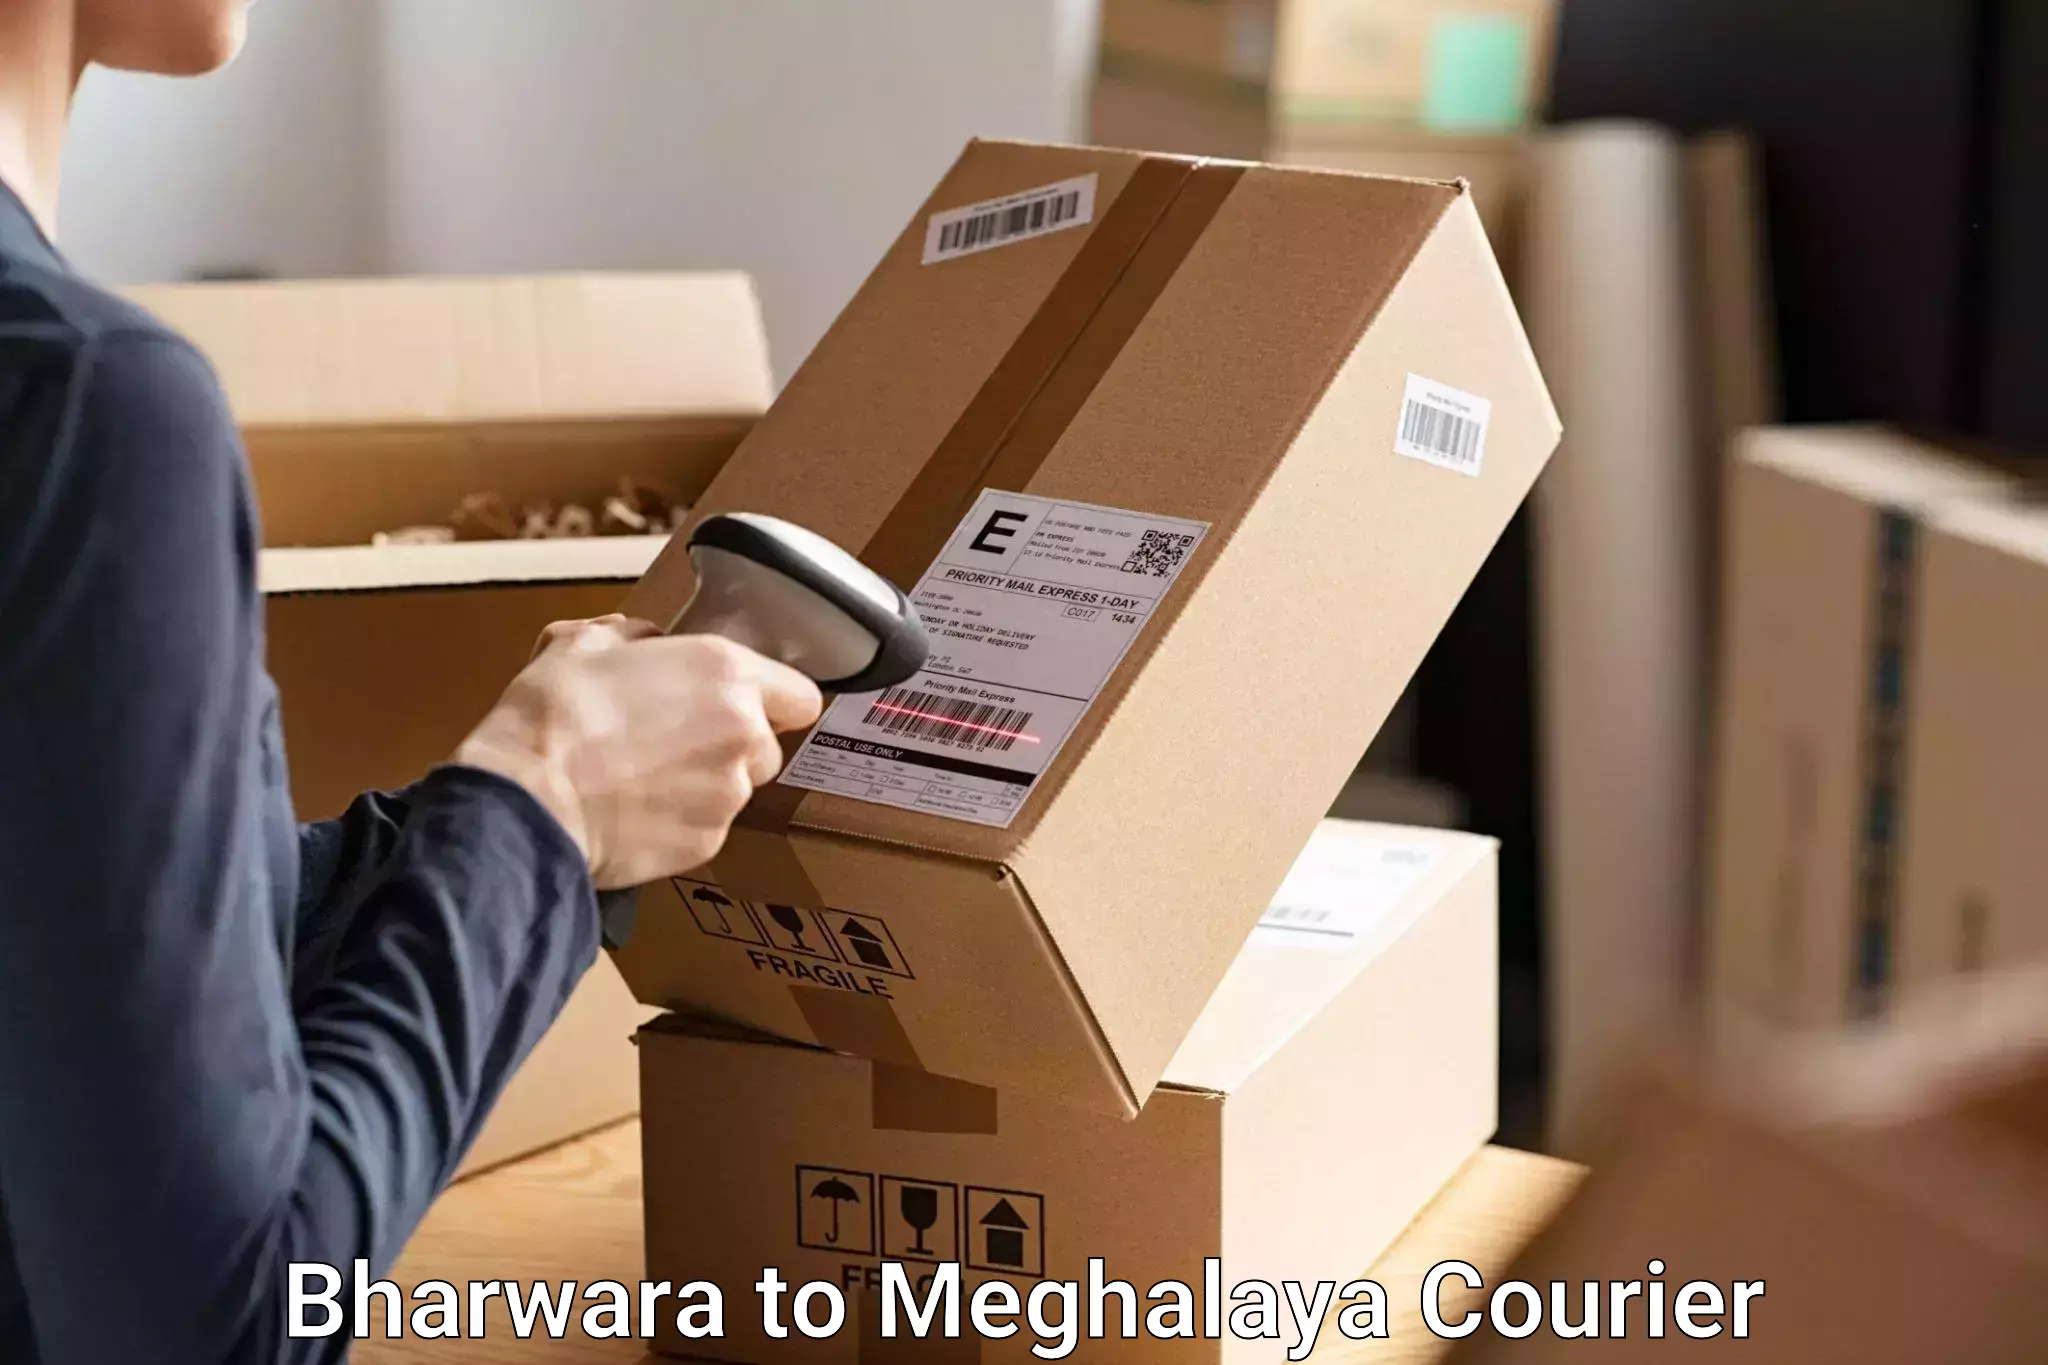 Baggage transport innovation Bharwara to Meghalaya